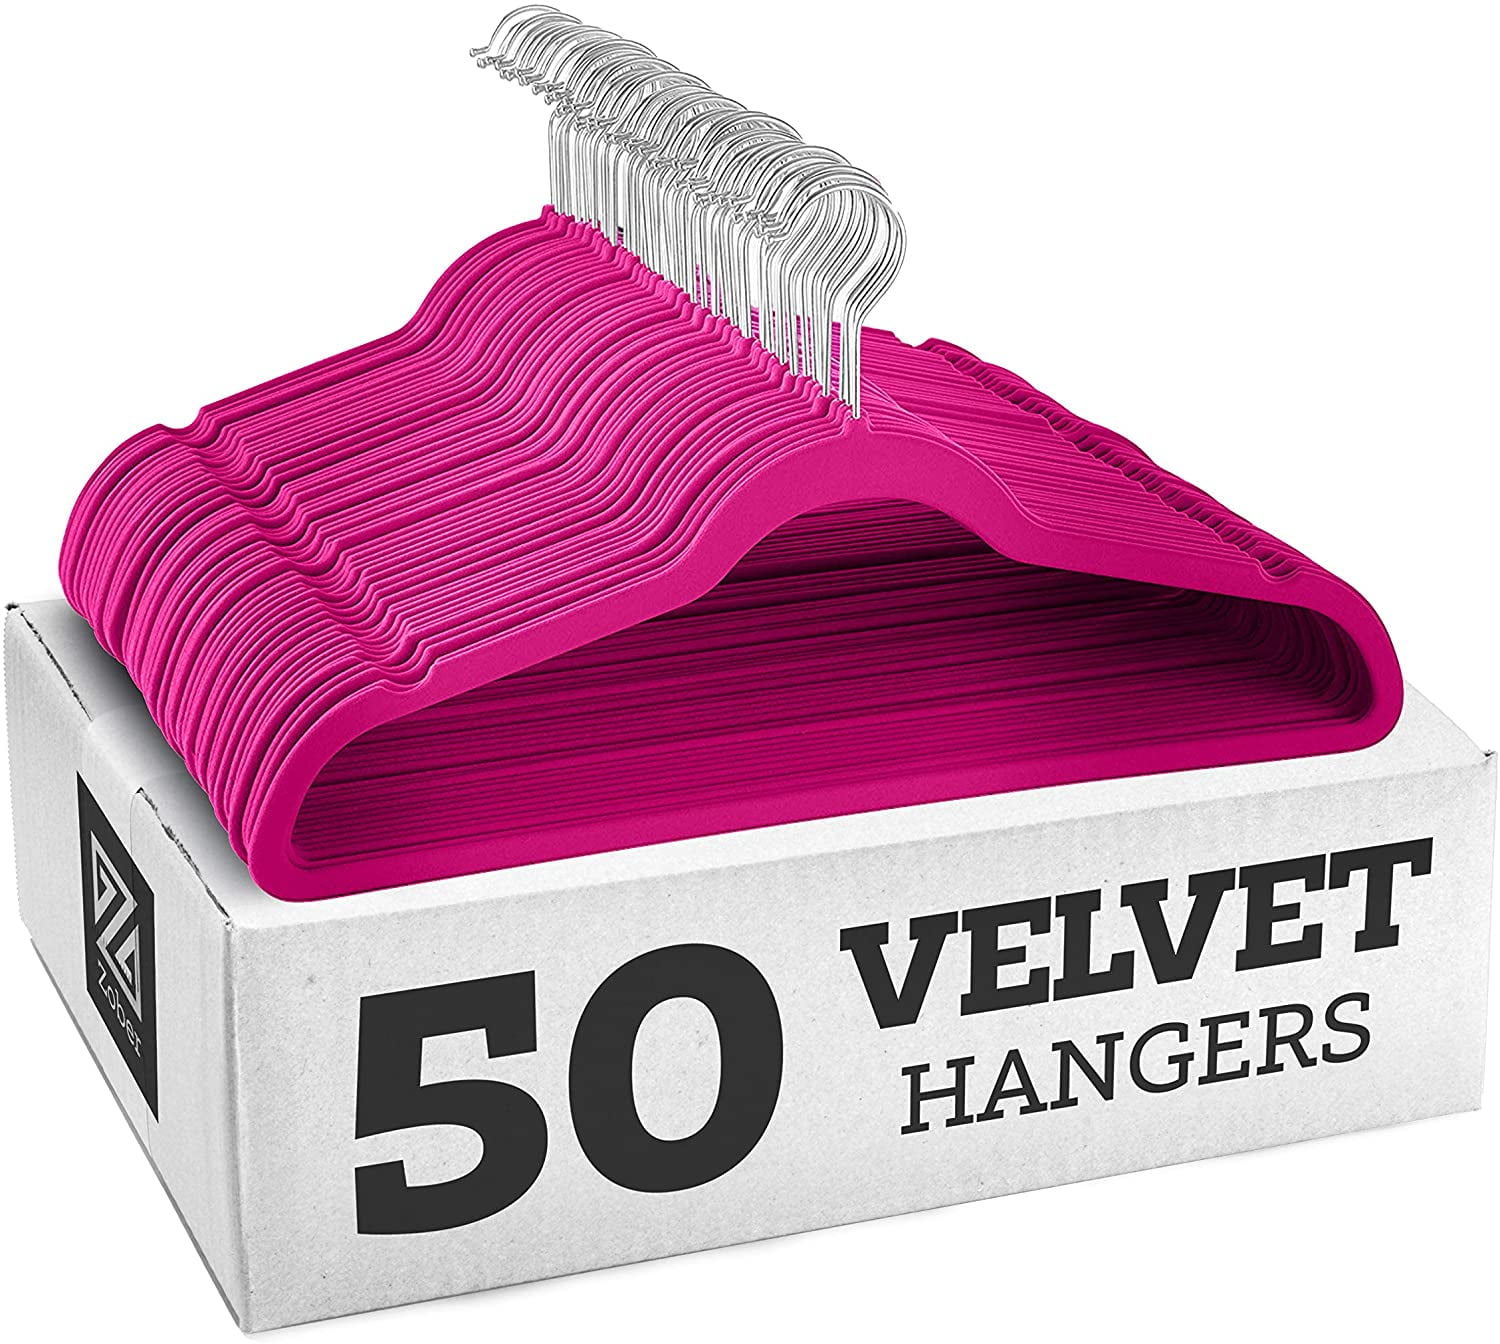 Zober Velvet Ultra Slim Non Slip Shirt Hangers, 50 Pack, Burgundy